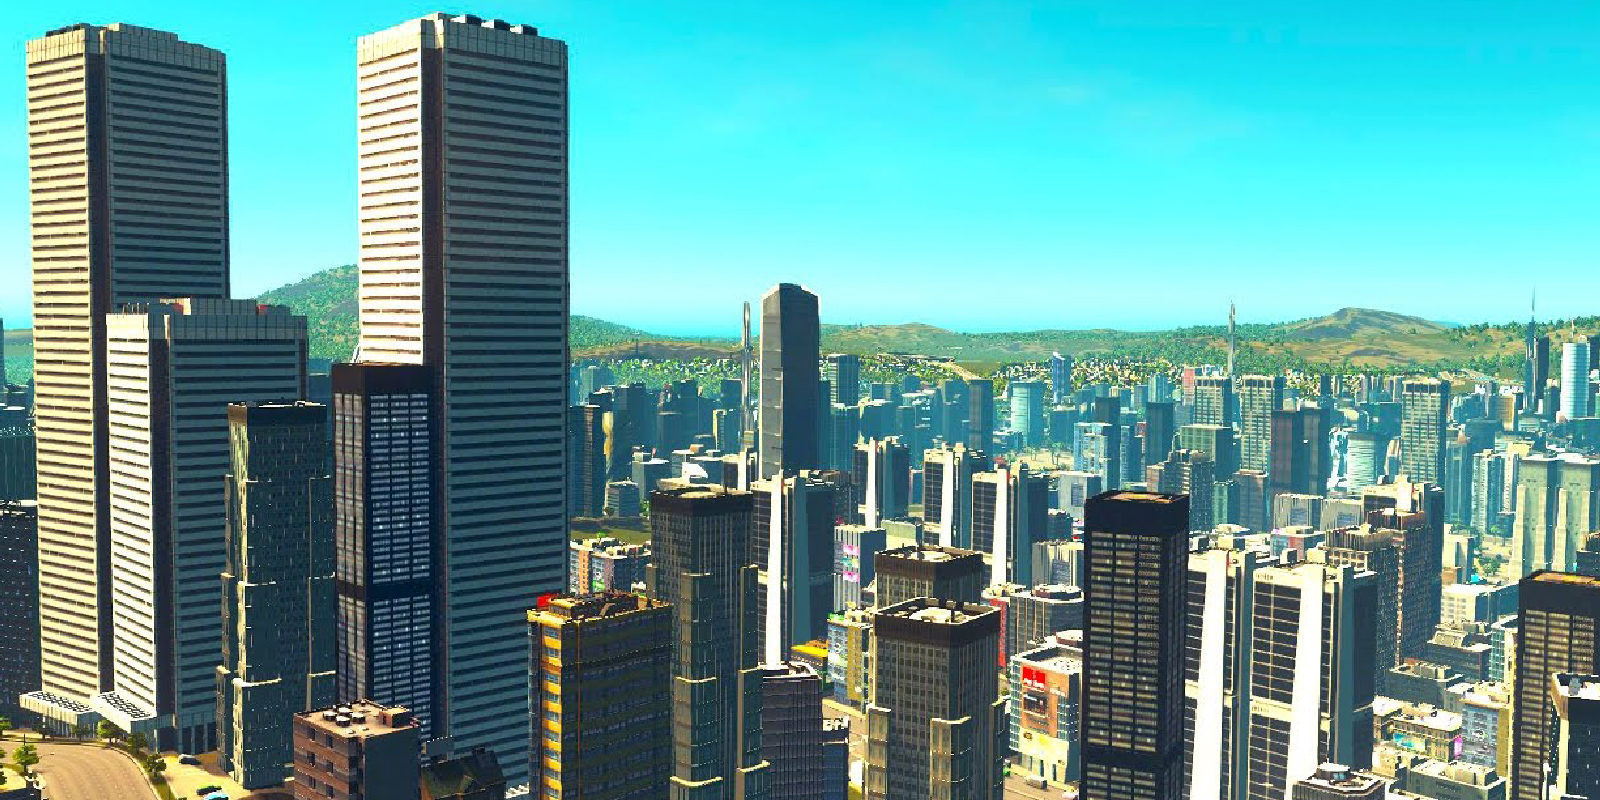 Llega la actualización "Snowfall" a 'Cities:Skylines' para Xbox One y PS4